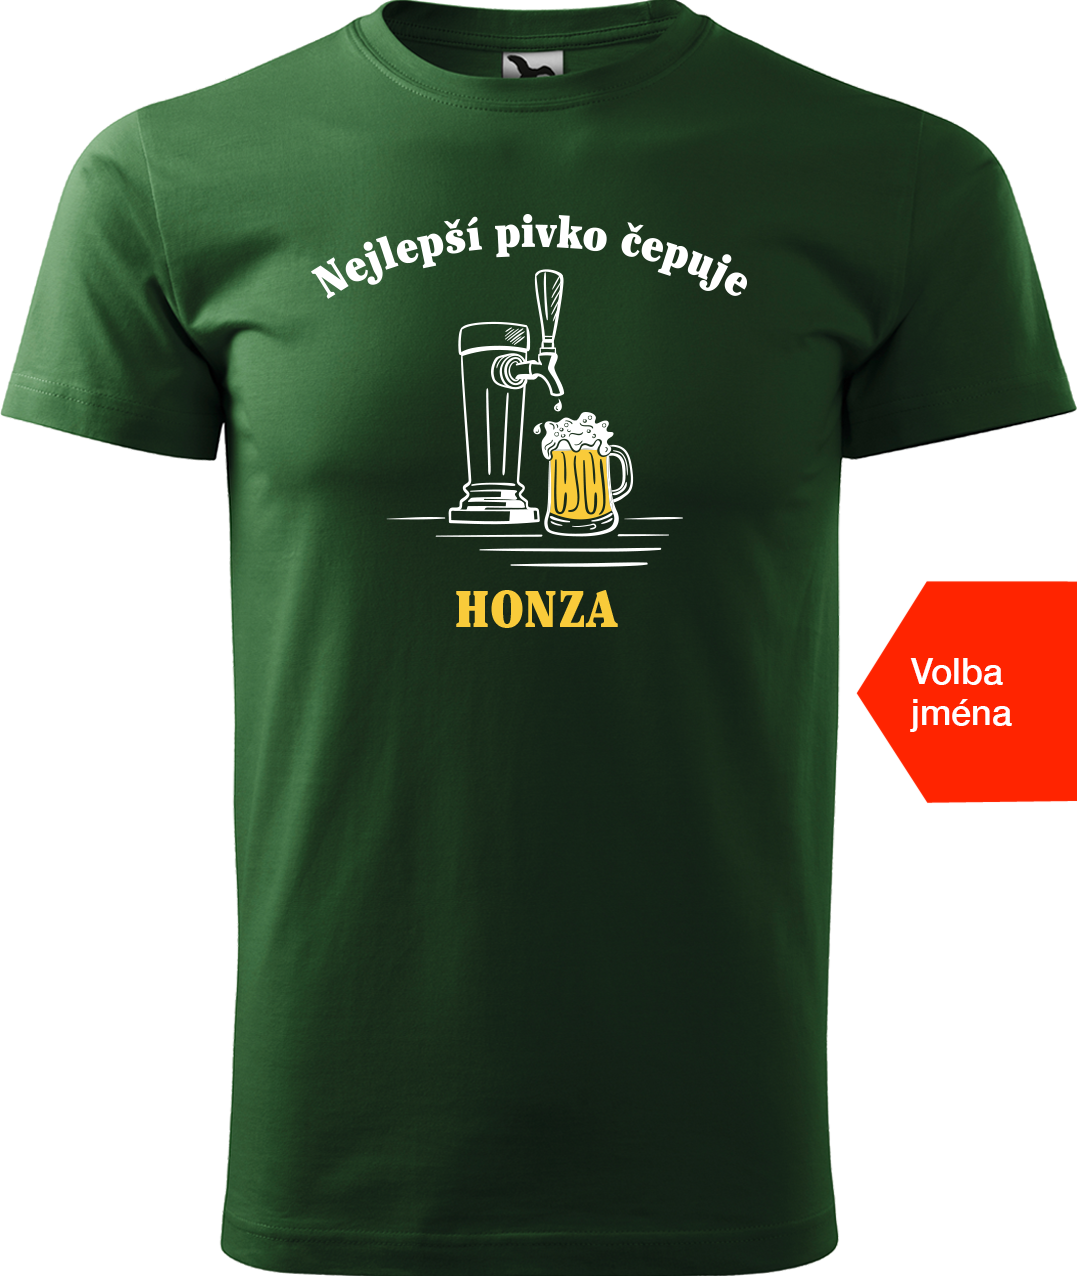 Pivní tričko - Nejlepší pivko čepuje + jméno Velikost: M, Barva: Lahvově zelená (06)